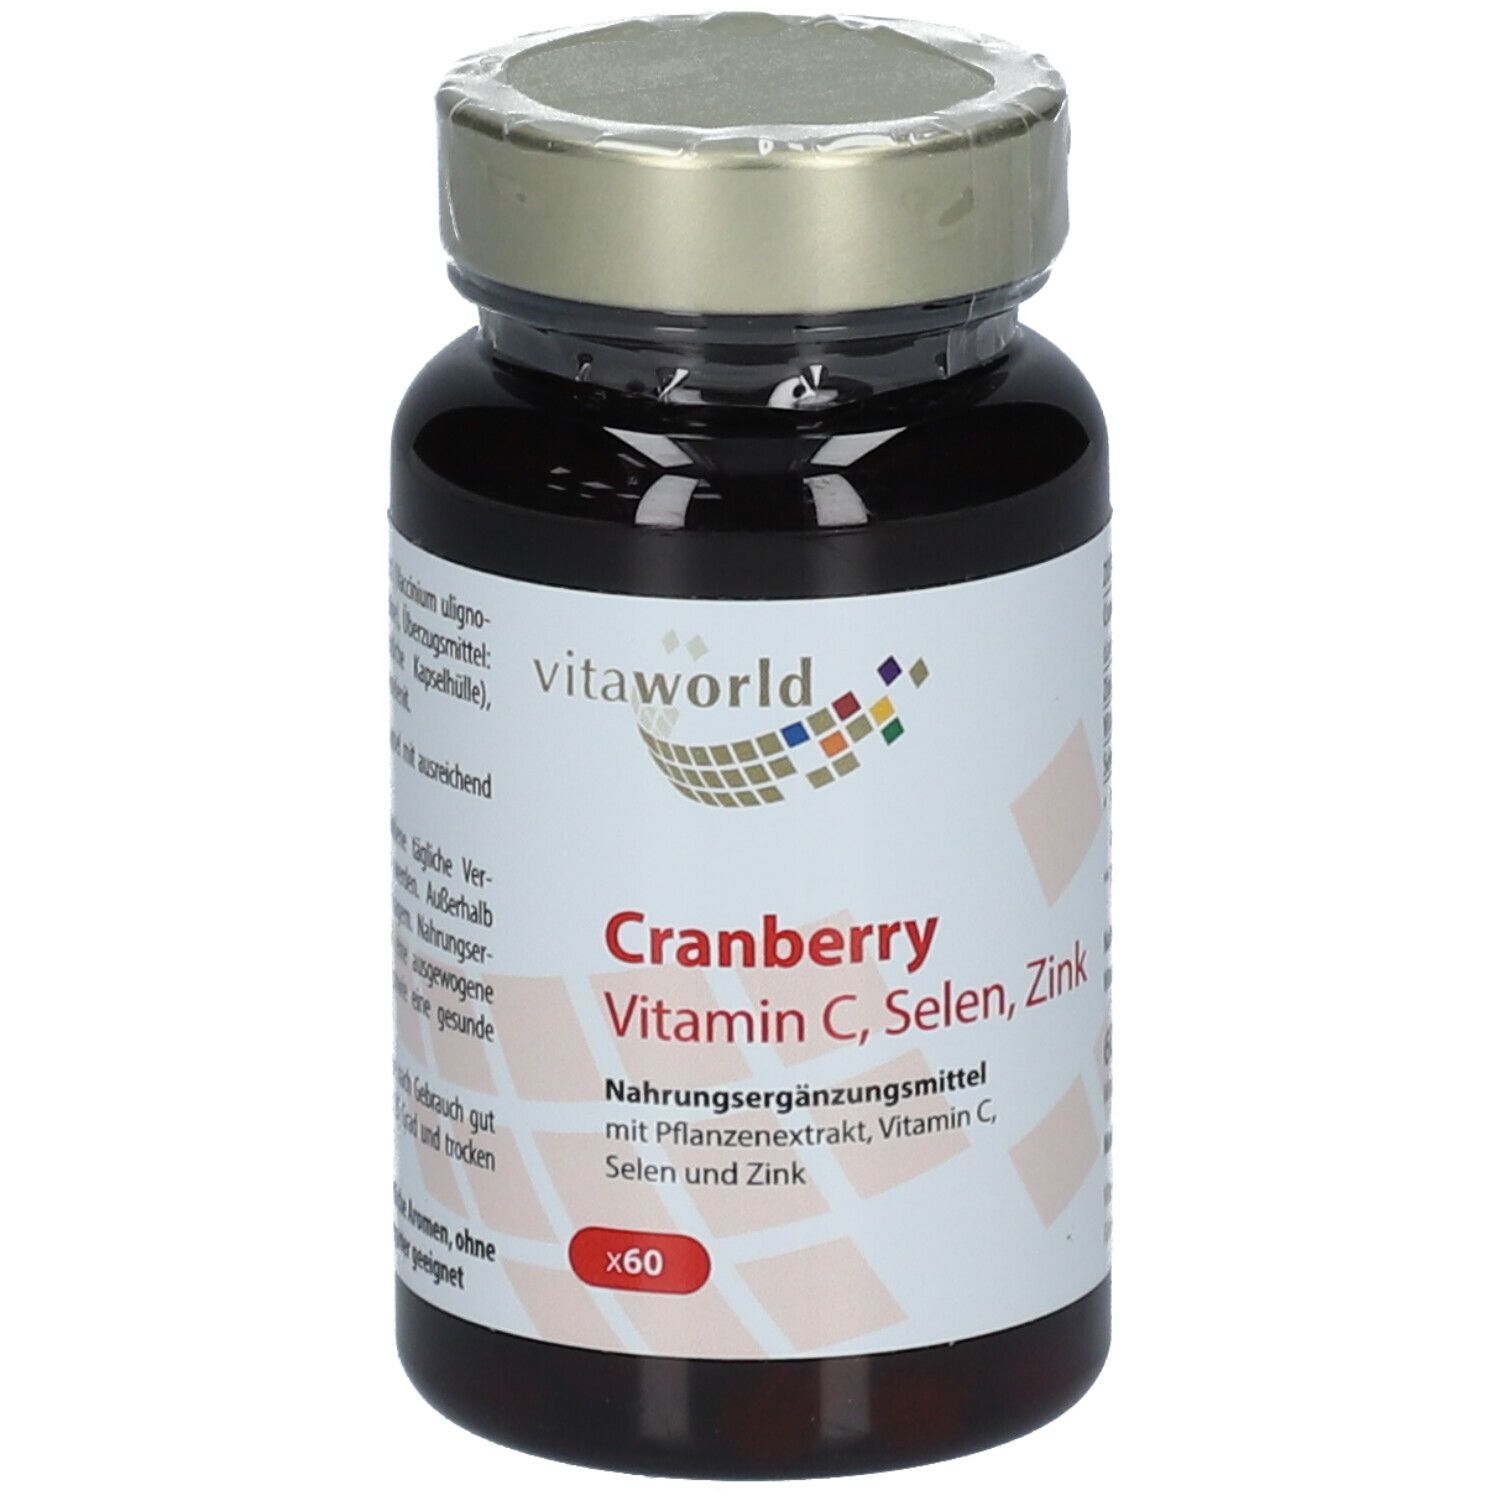 Cranberryextrakt + Vitamin C + Selen + Zink